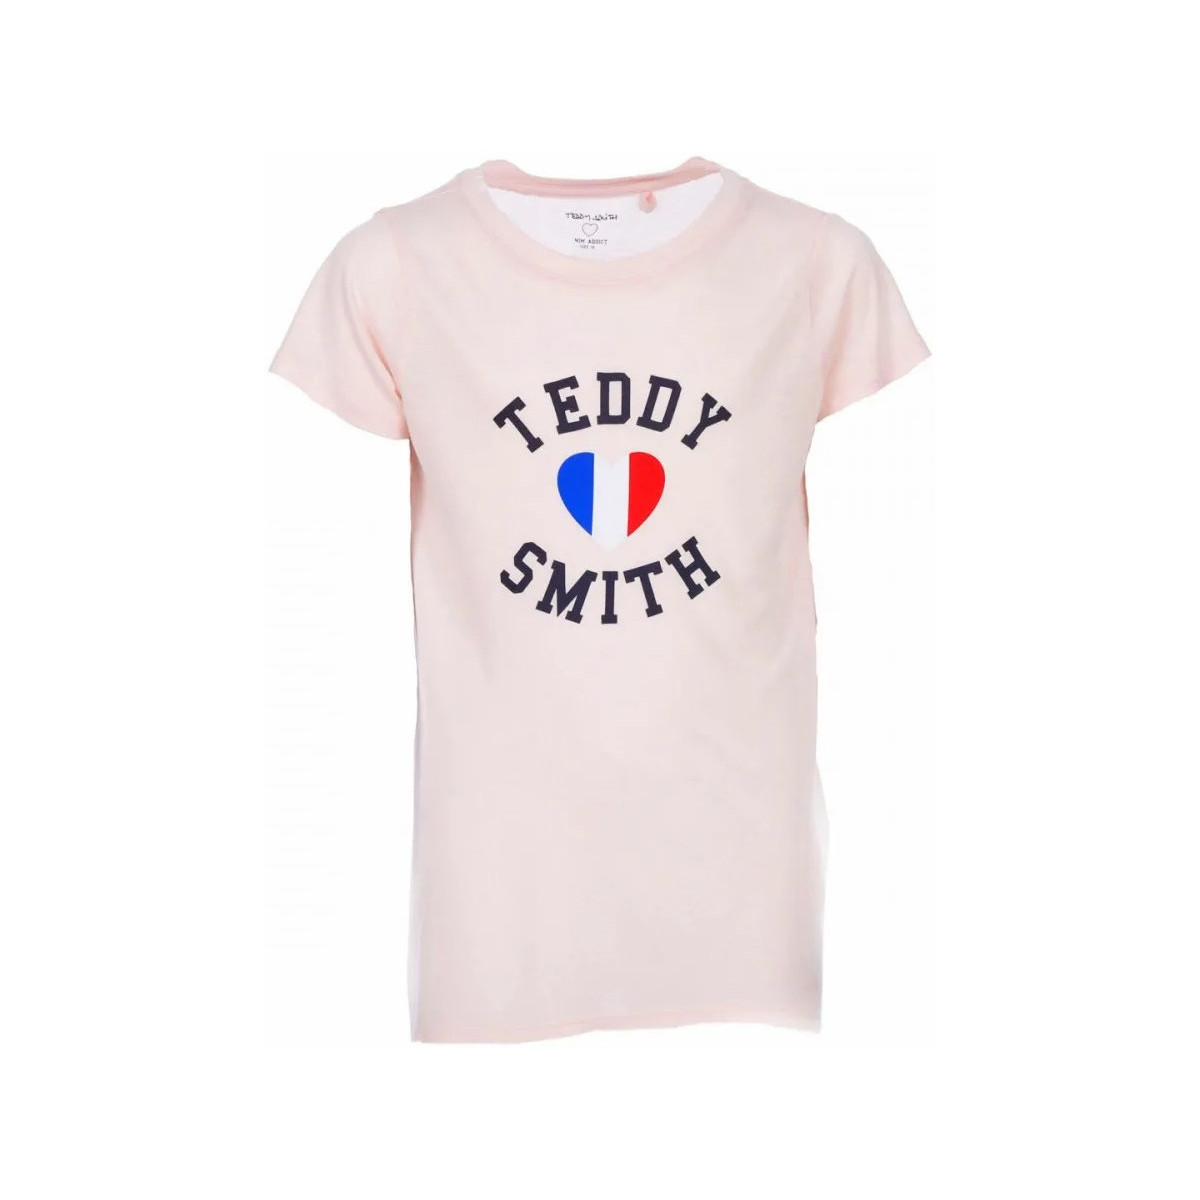 Textiel Meisjes T-shirts korte mouwen Teddy Smith  Roze